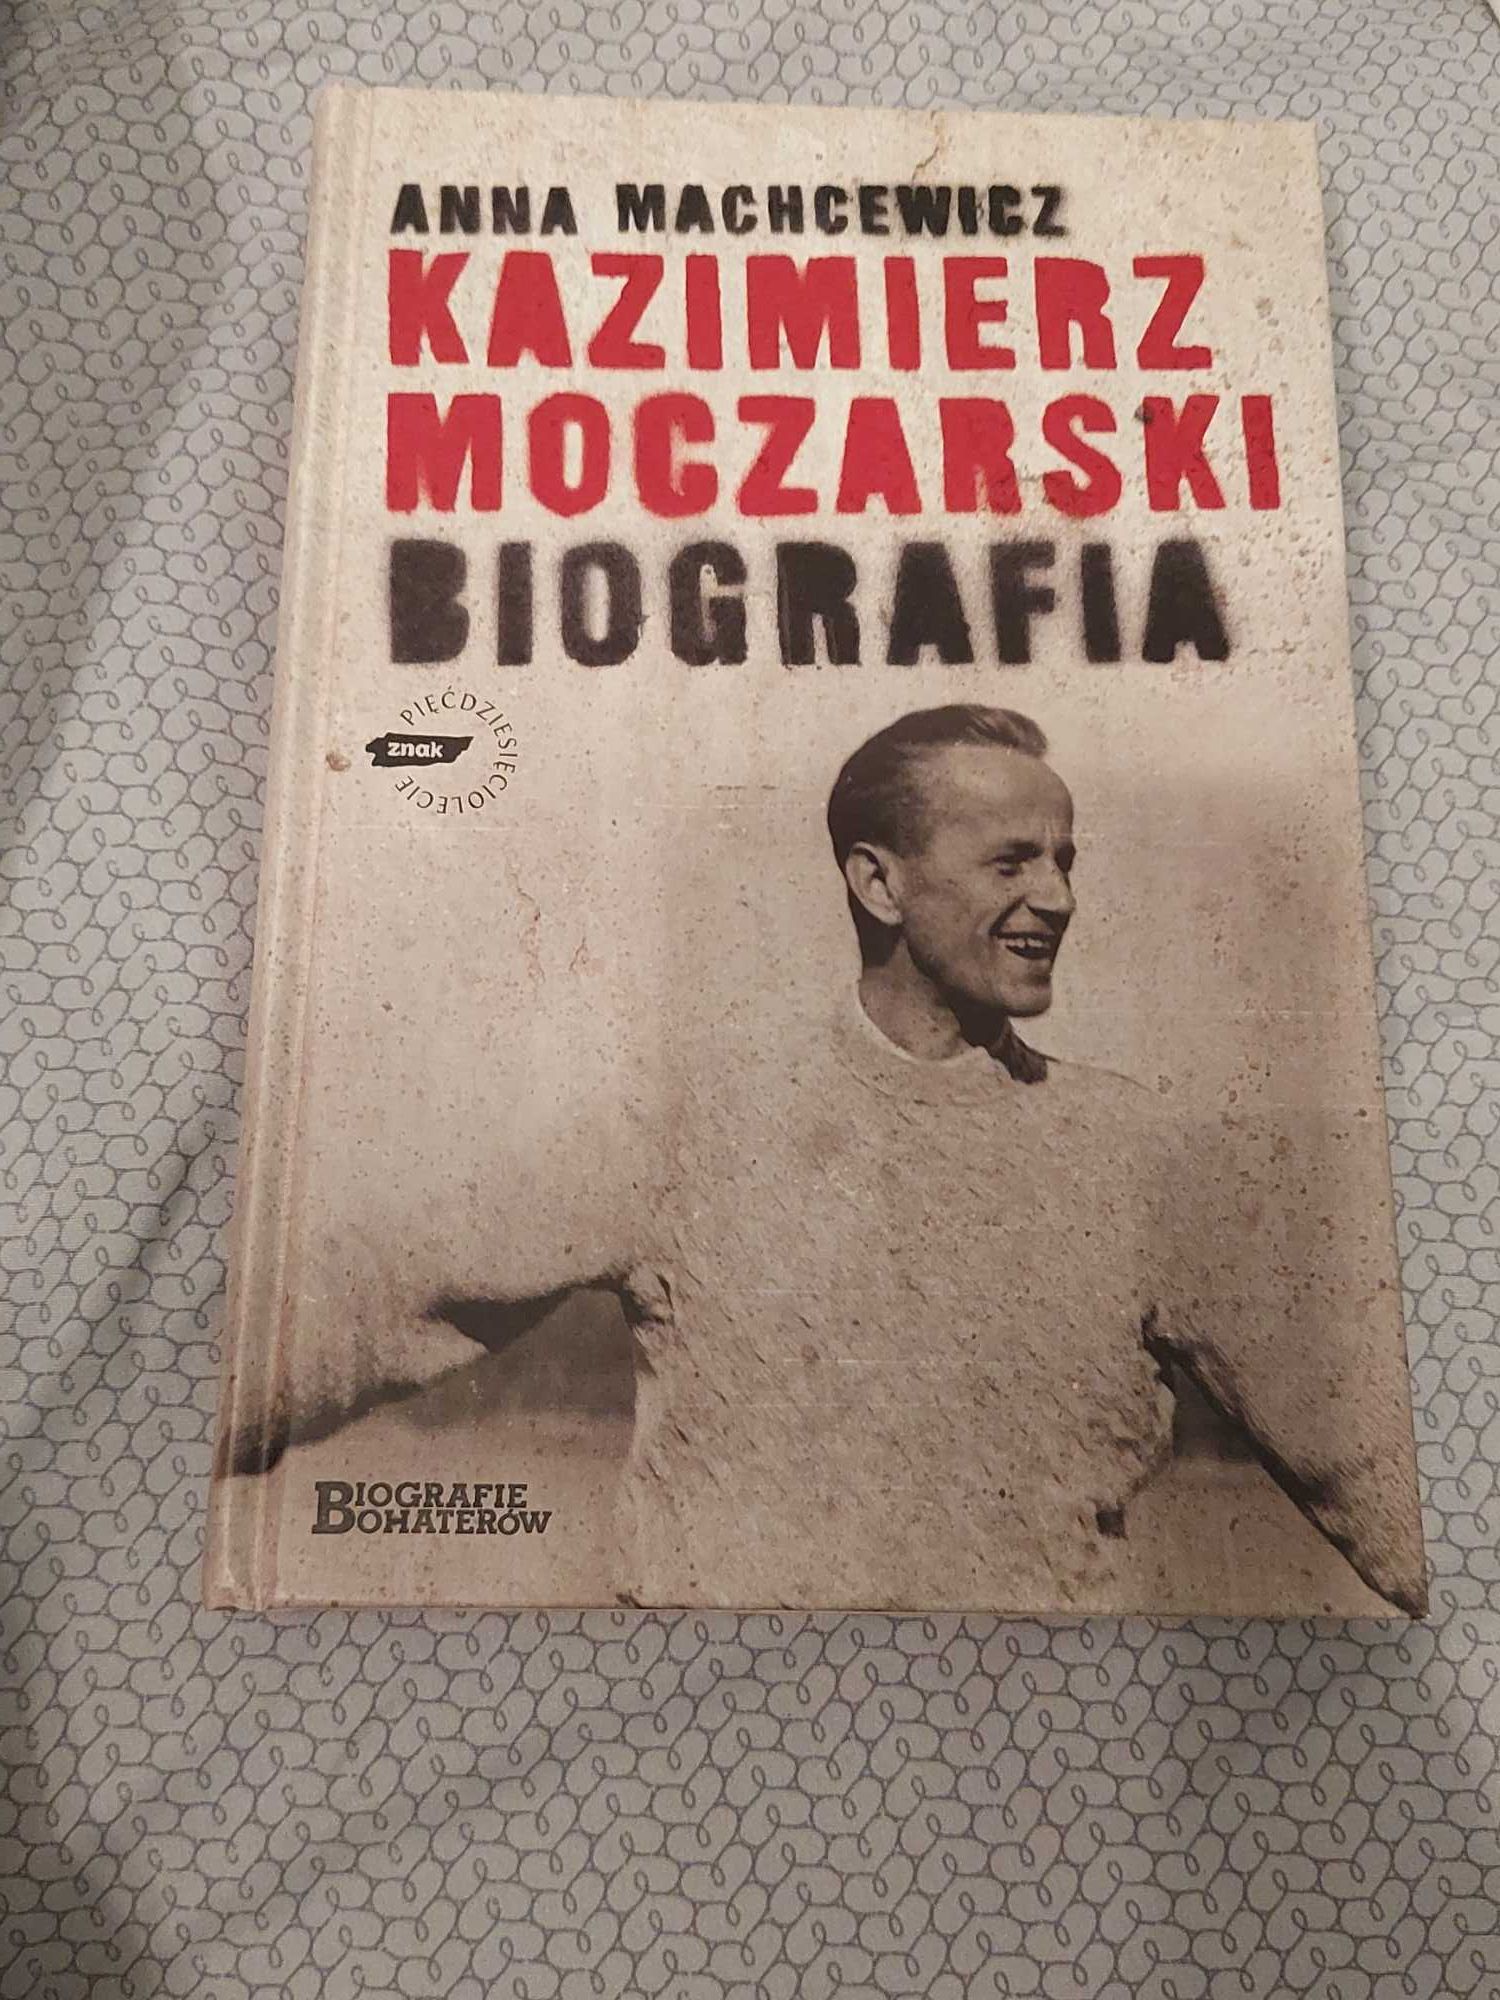 Kazimierz Moczarski biografia Anna Machcewicz